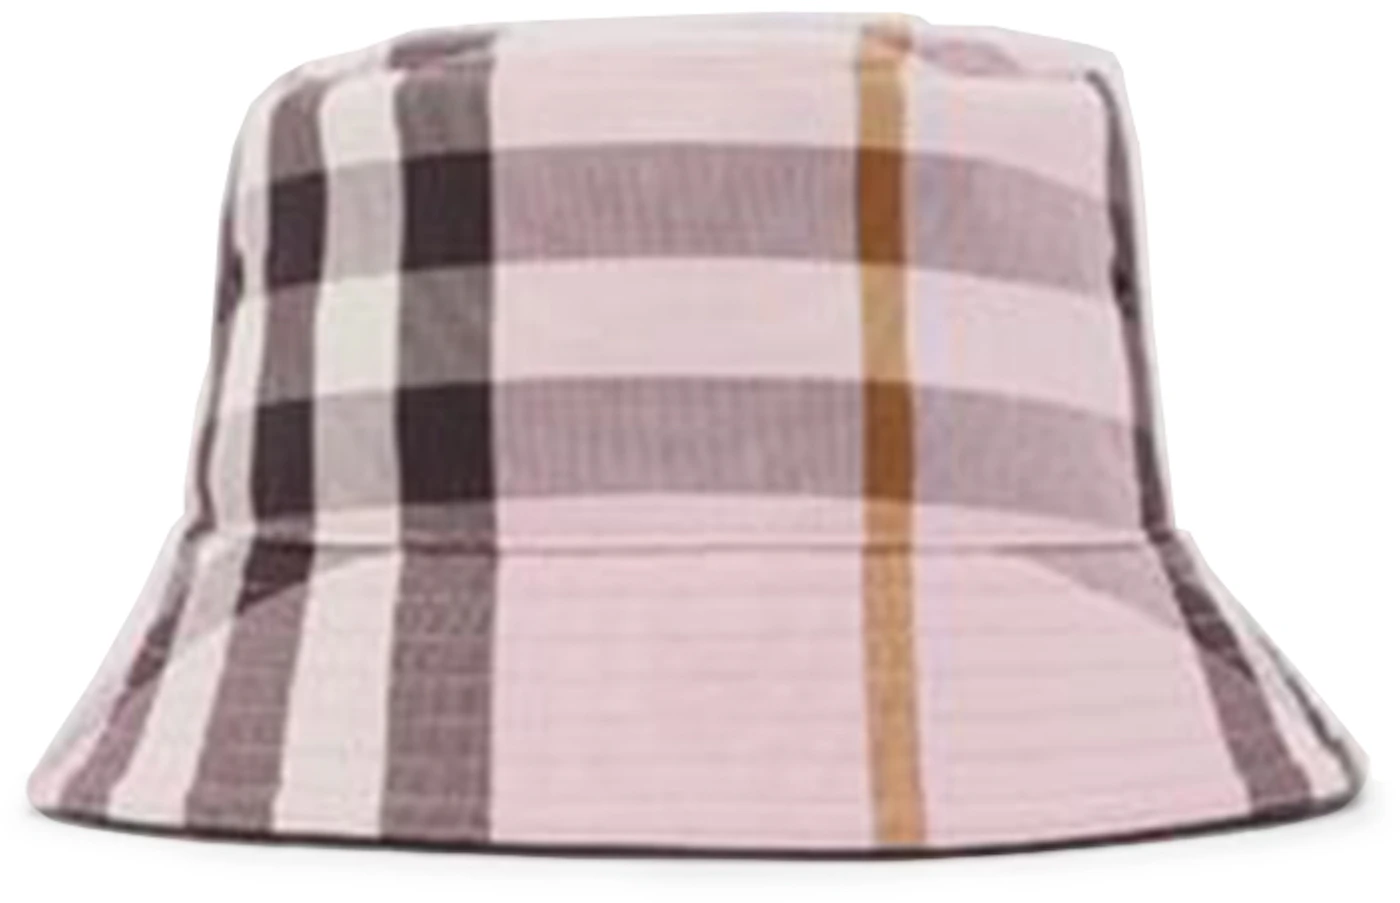 Cotton Bucket Hat Pink